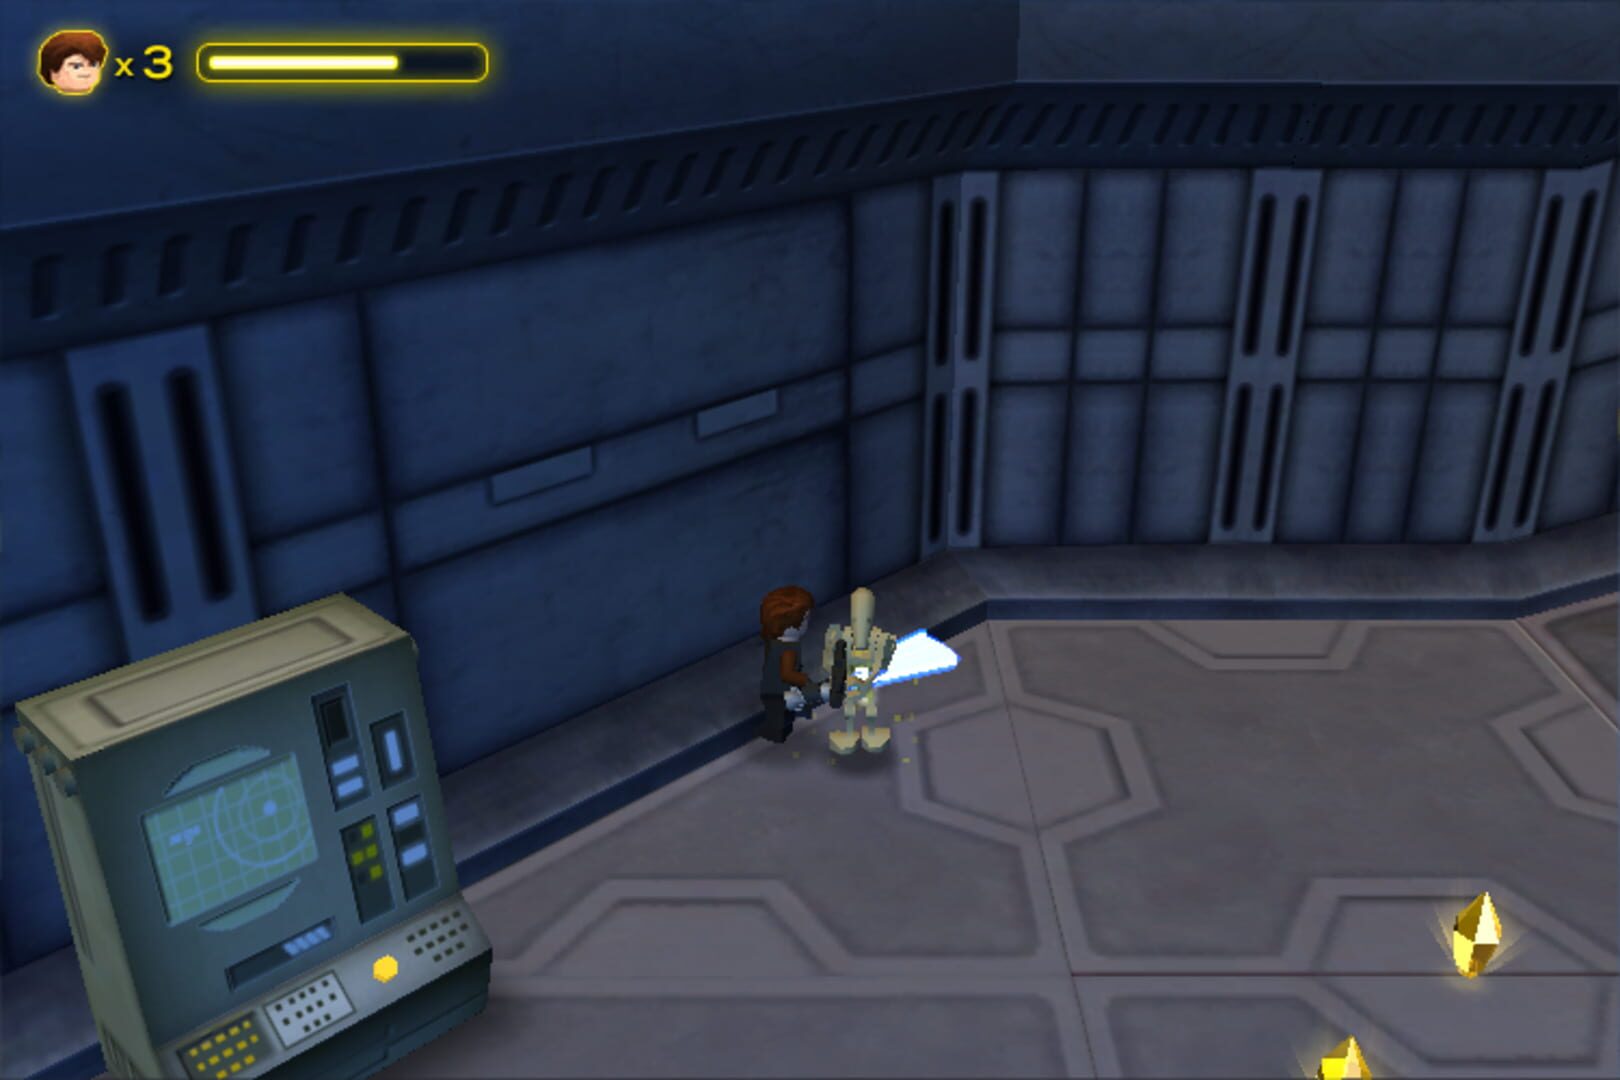 Captura de pantalla - LEGO Star Wars: The Quest for R2-D2